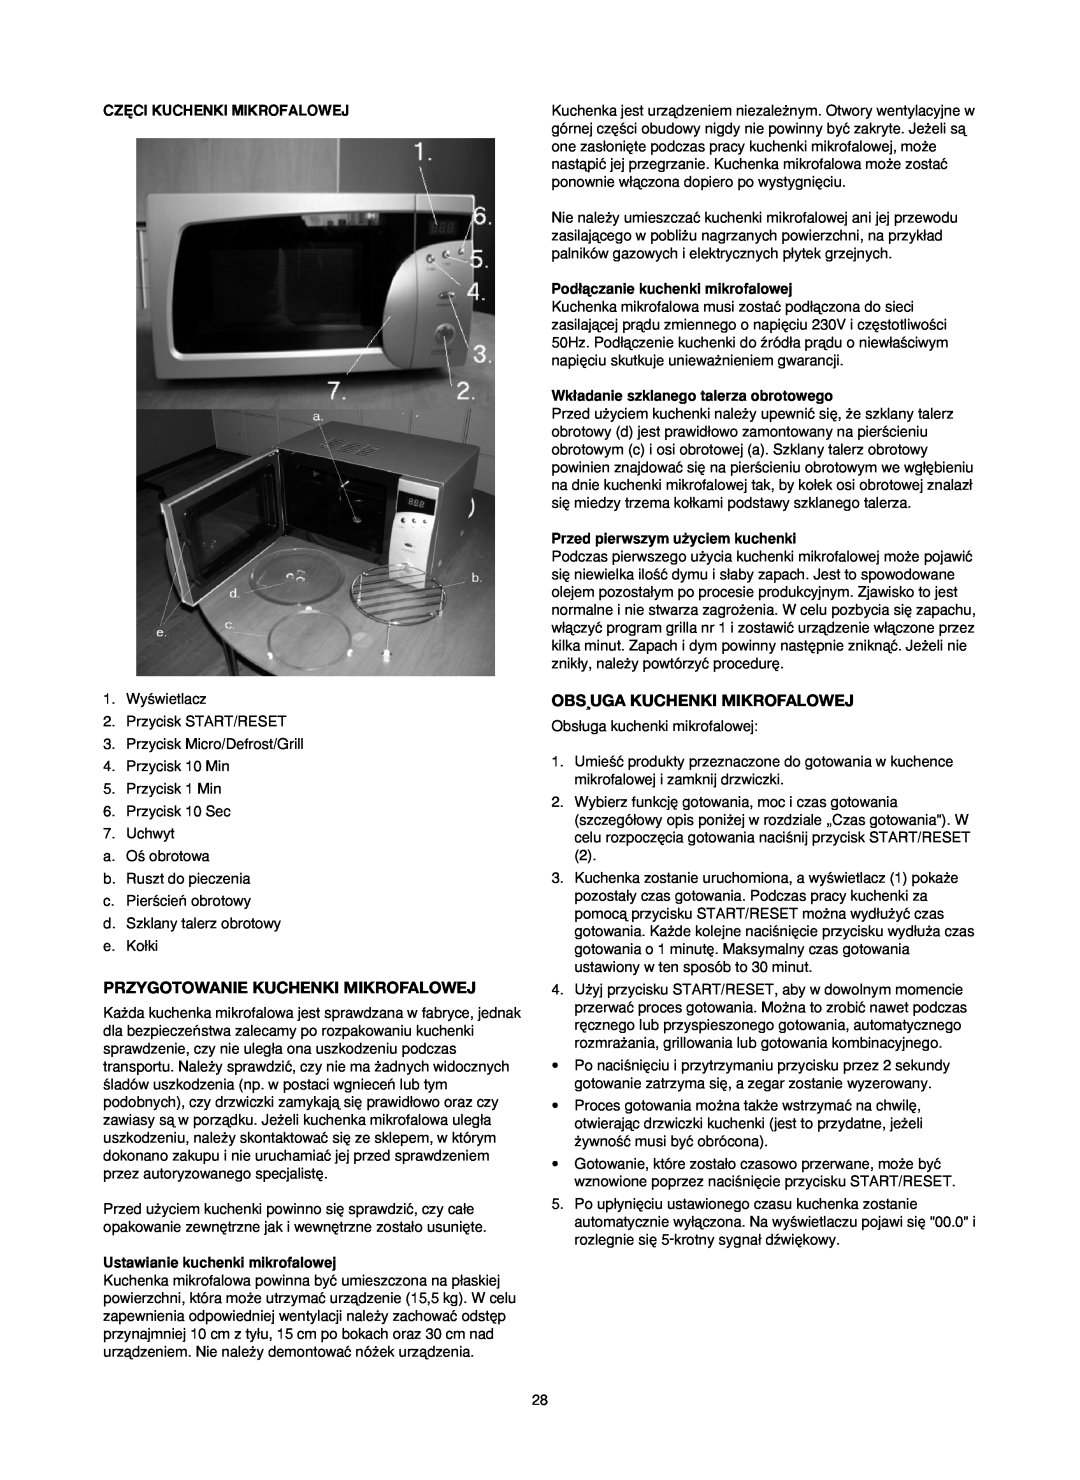 Melissa 753-084 manual Przygotowanie Kuchenki Mikrofalowej, Obs¸Uga Kuchenki Mikrofalowej, Cz¢Ci Kuchenki Mikrofalowej 